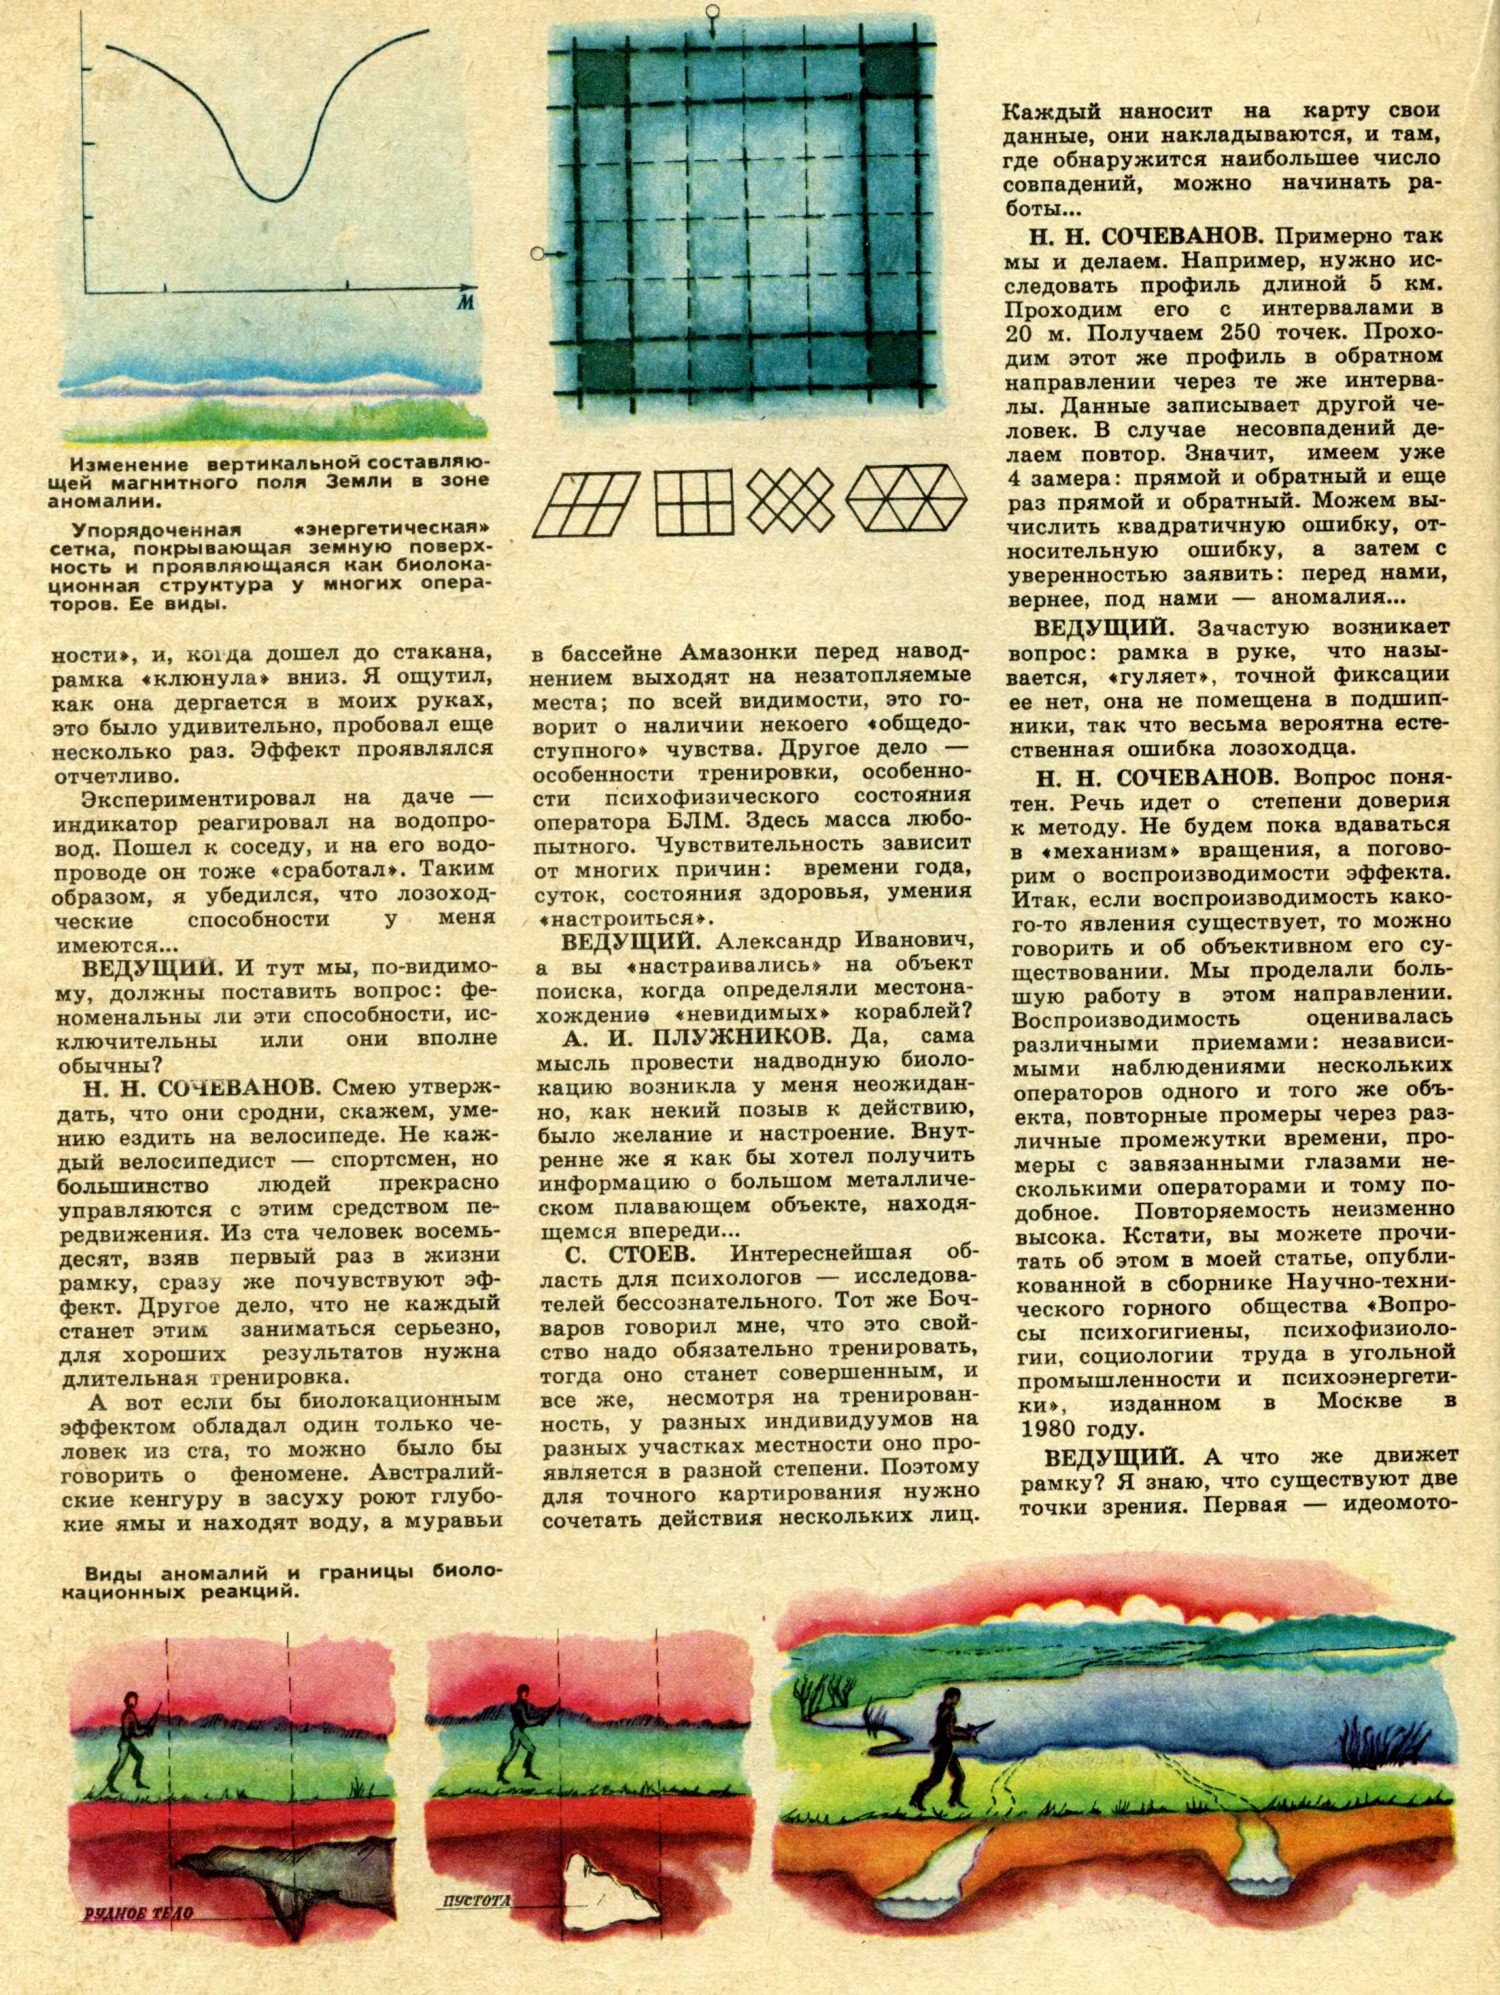 Проблемы биолокации. Техника — Молодёжи, 1983, №2, с.48-53. Фотокопия №5